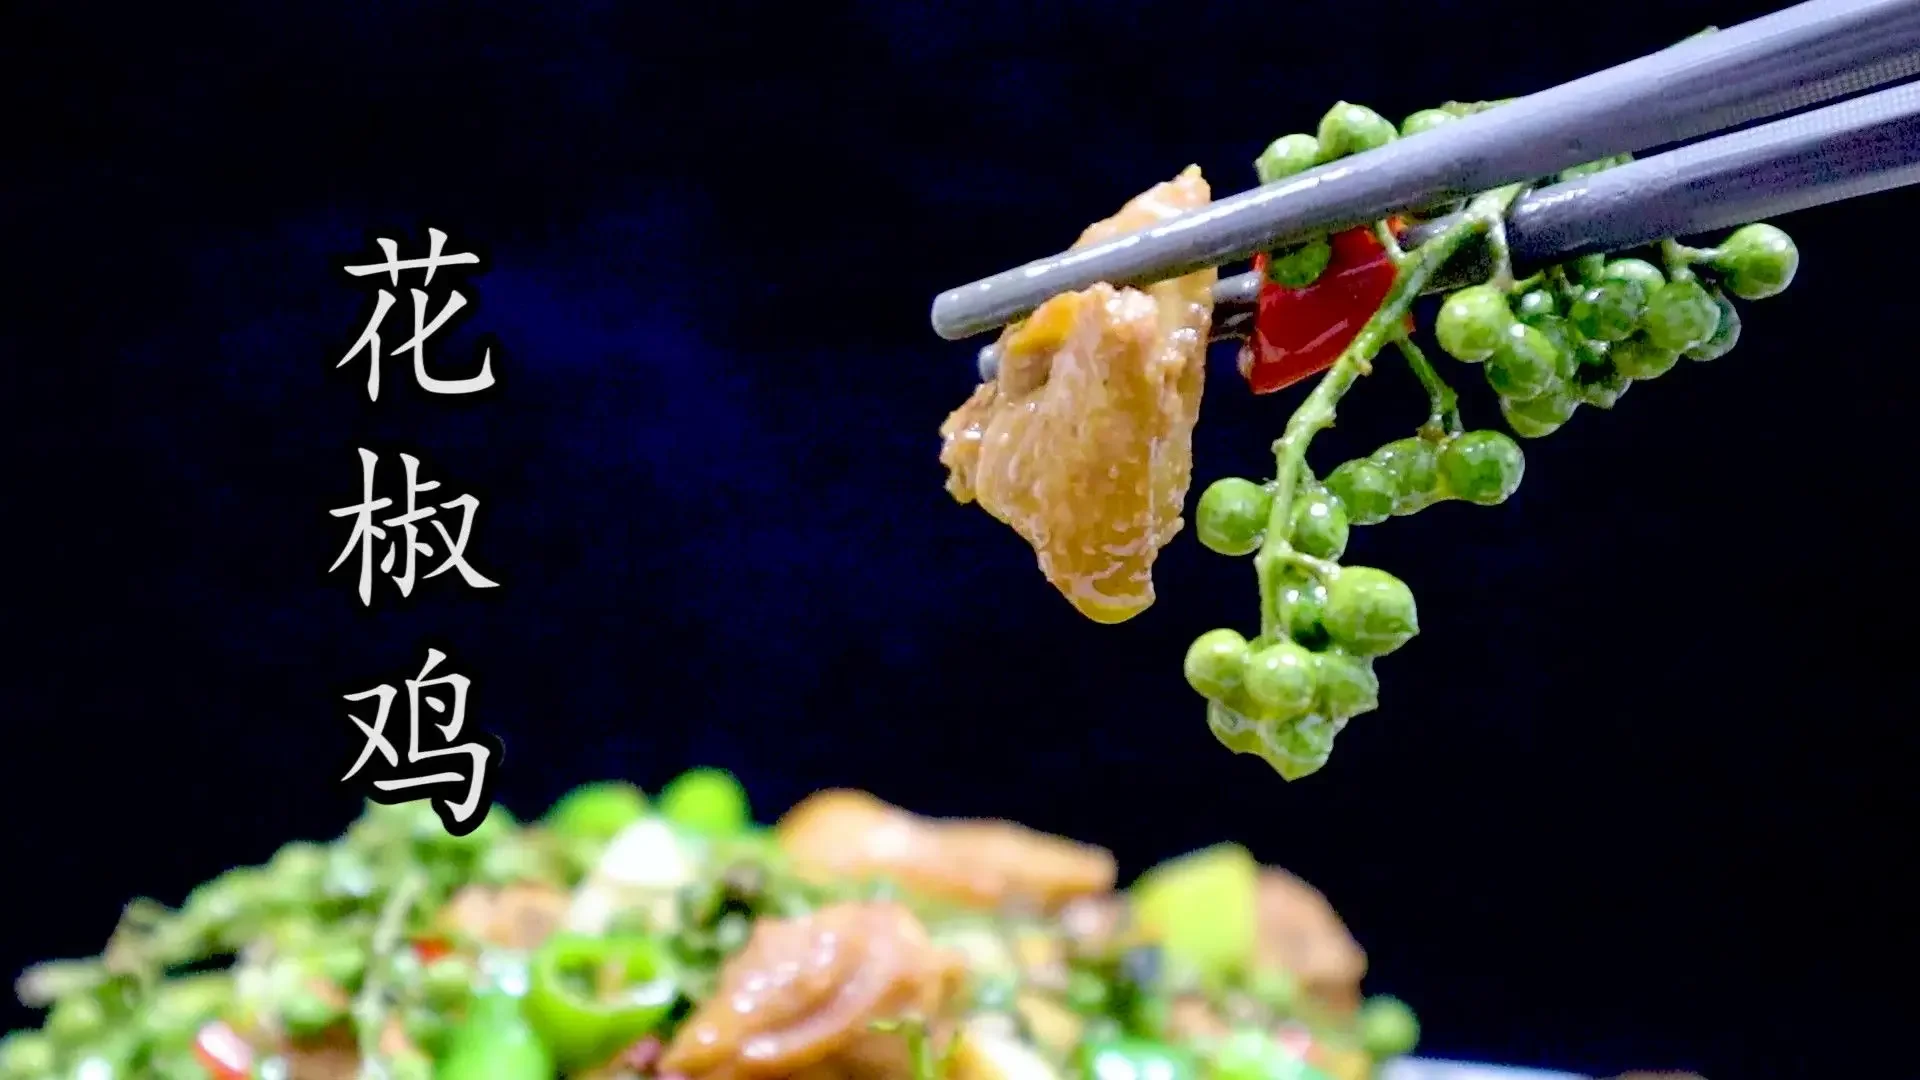 夏重慶江湖名菜#鐵山坪花椒雞 麻辣鮮香極致的江湖菜代表之一